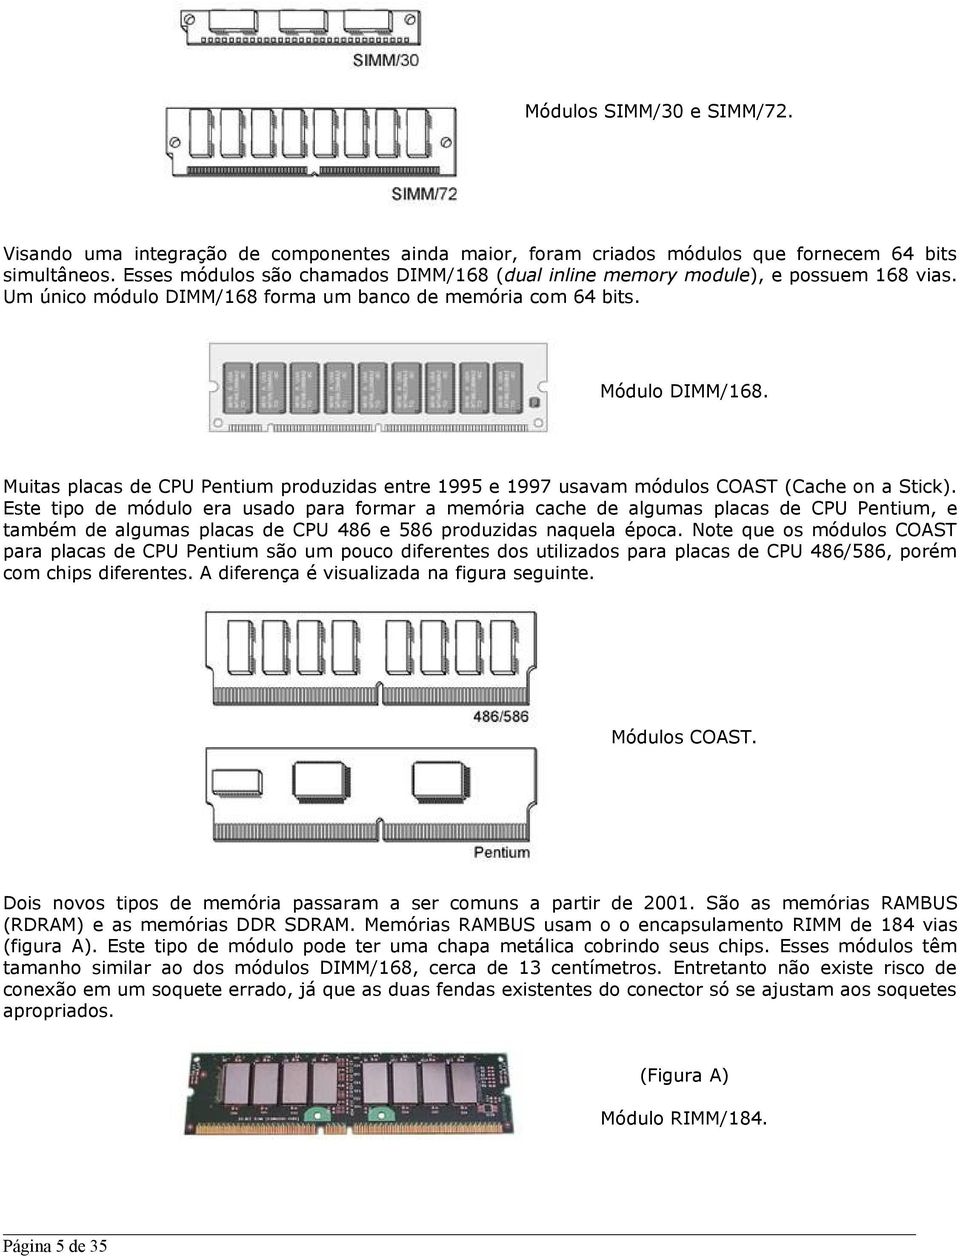 Muitas placas de CPU Pentium produzidas entre 1995 e 1997 usavam módulos COAST (Cache on a Stick).